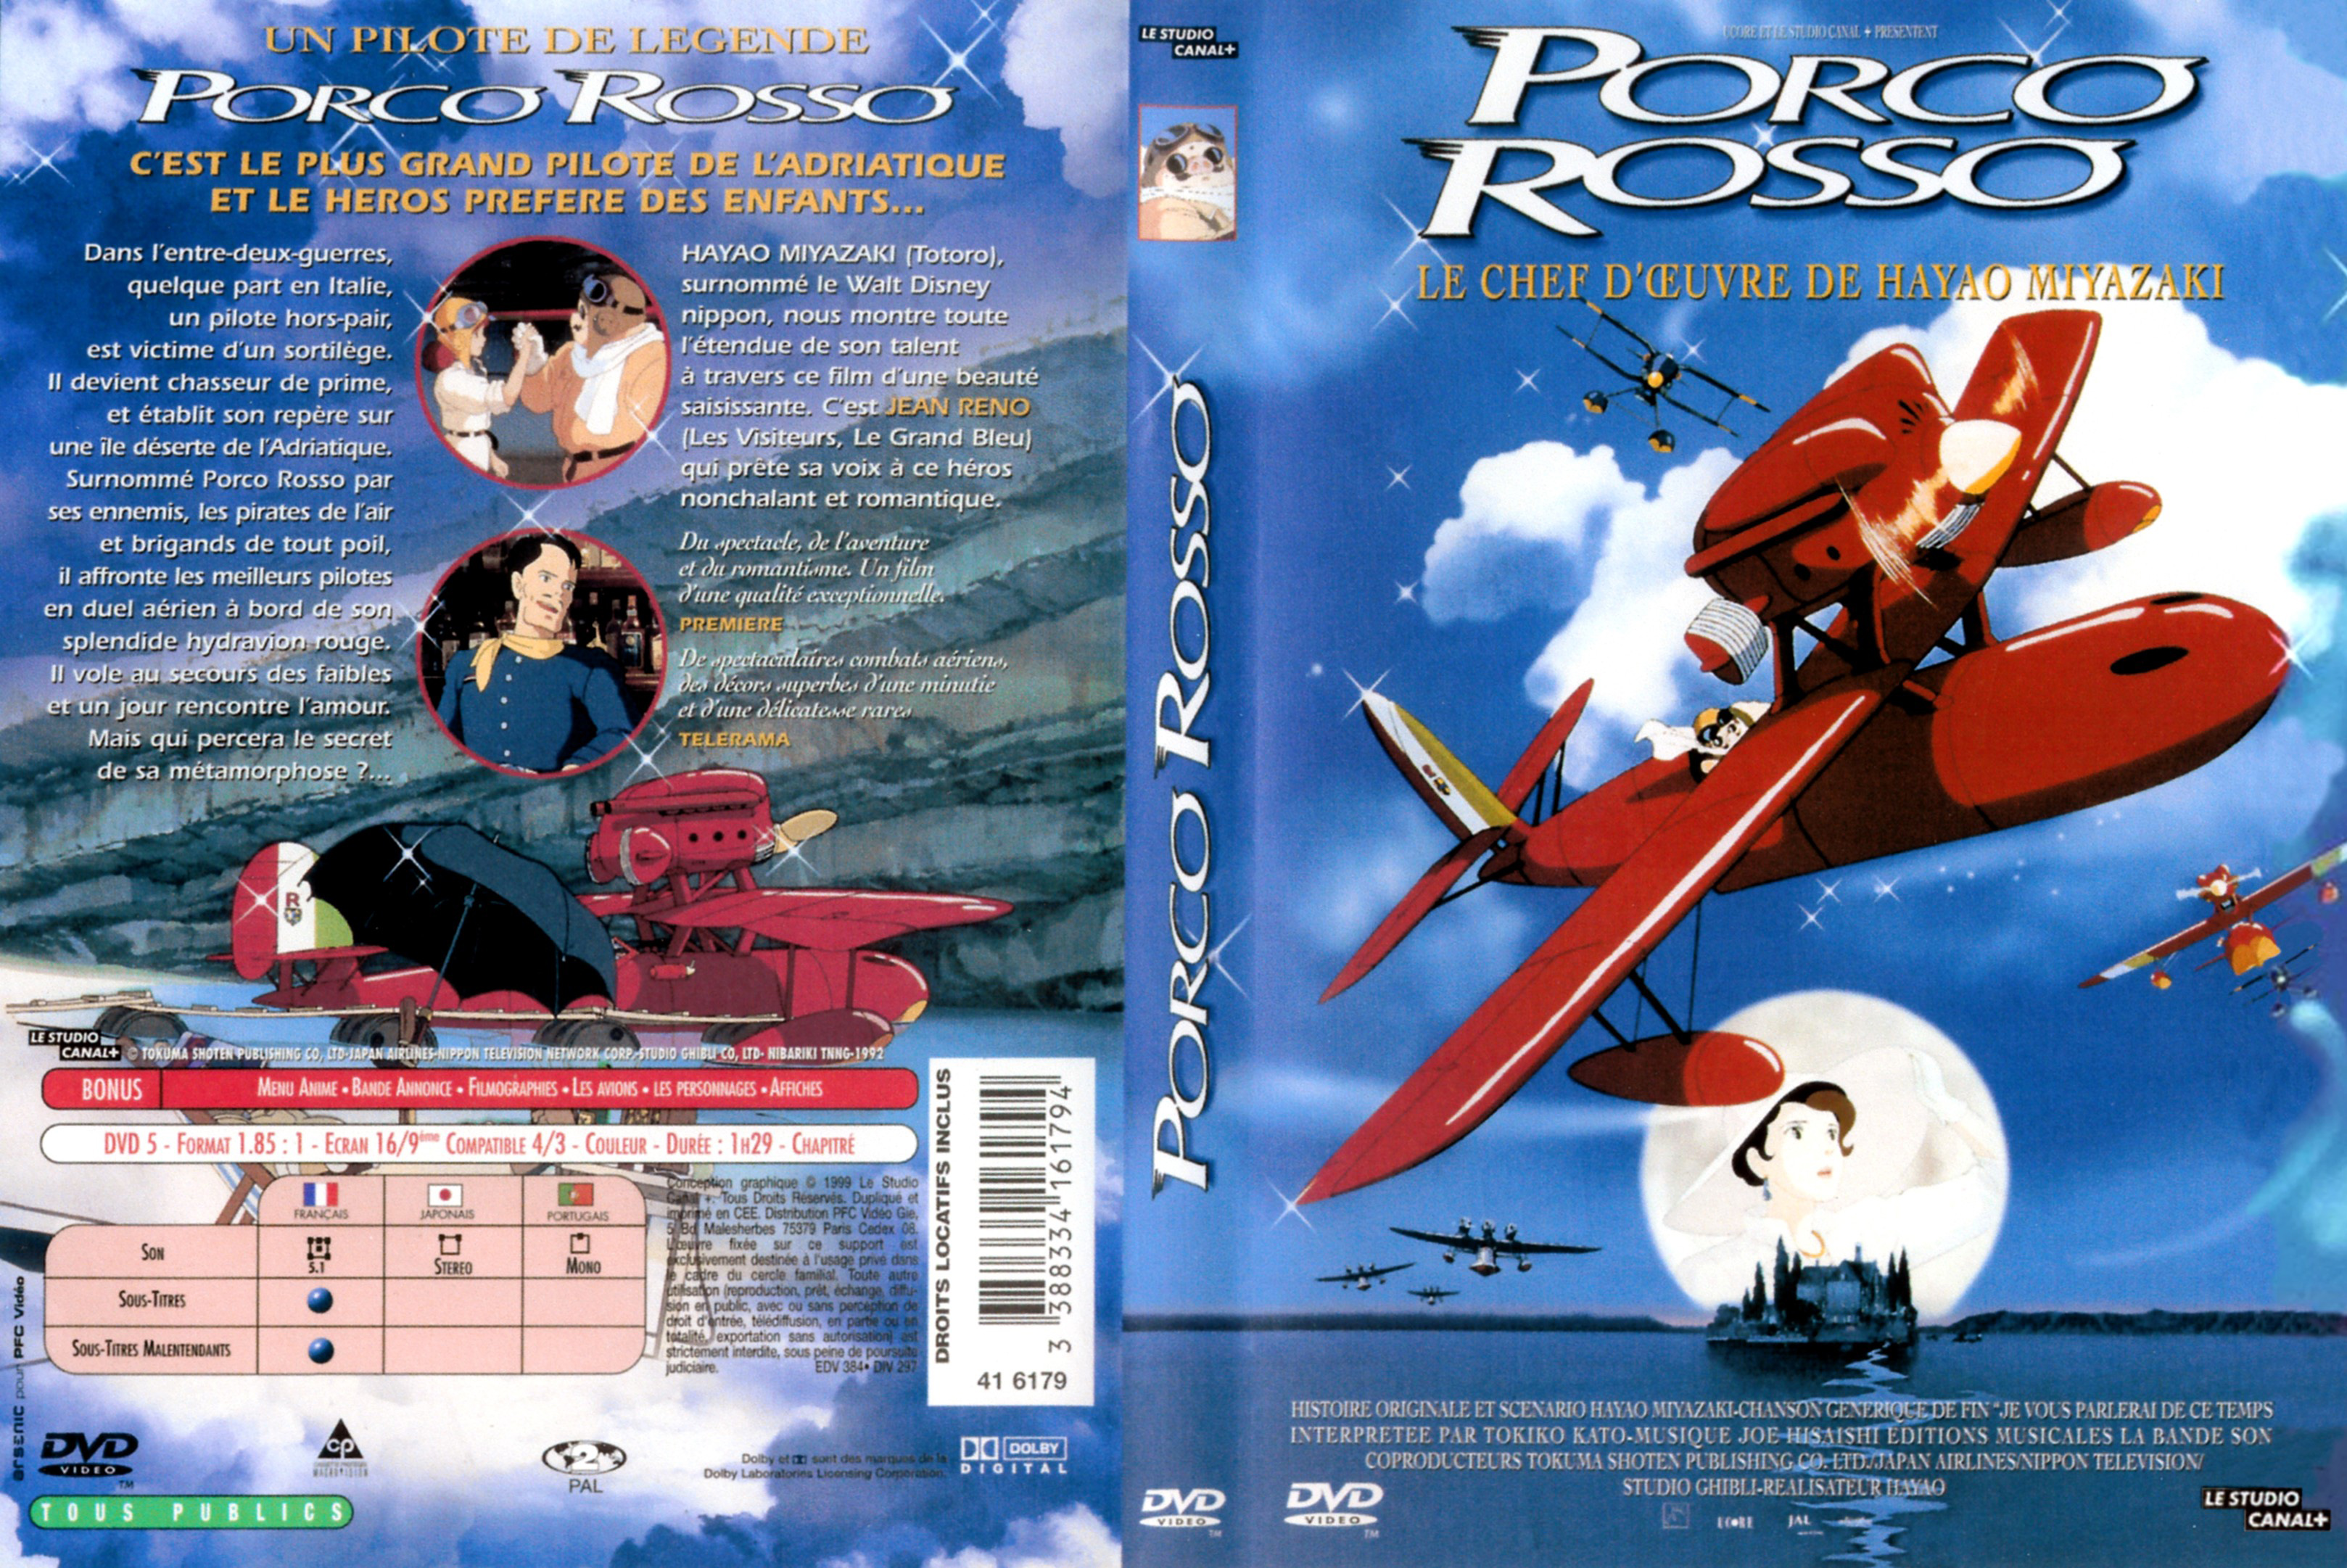 Jaquette DVD Porco Rosso v2